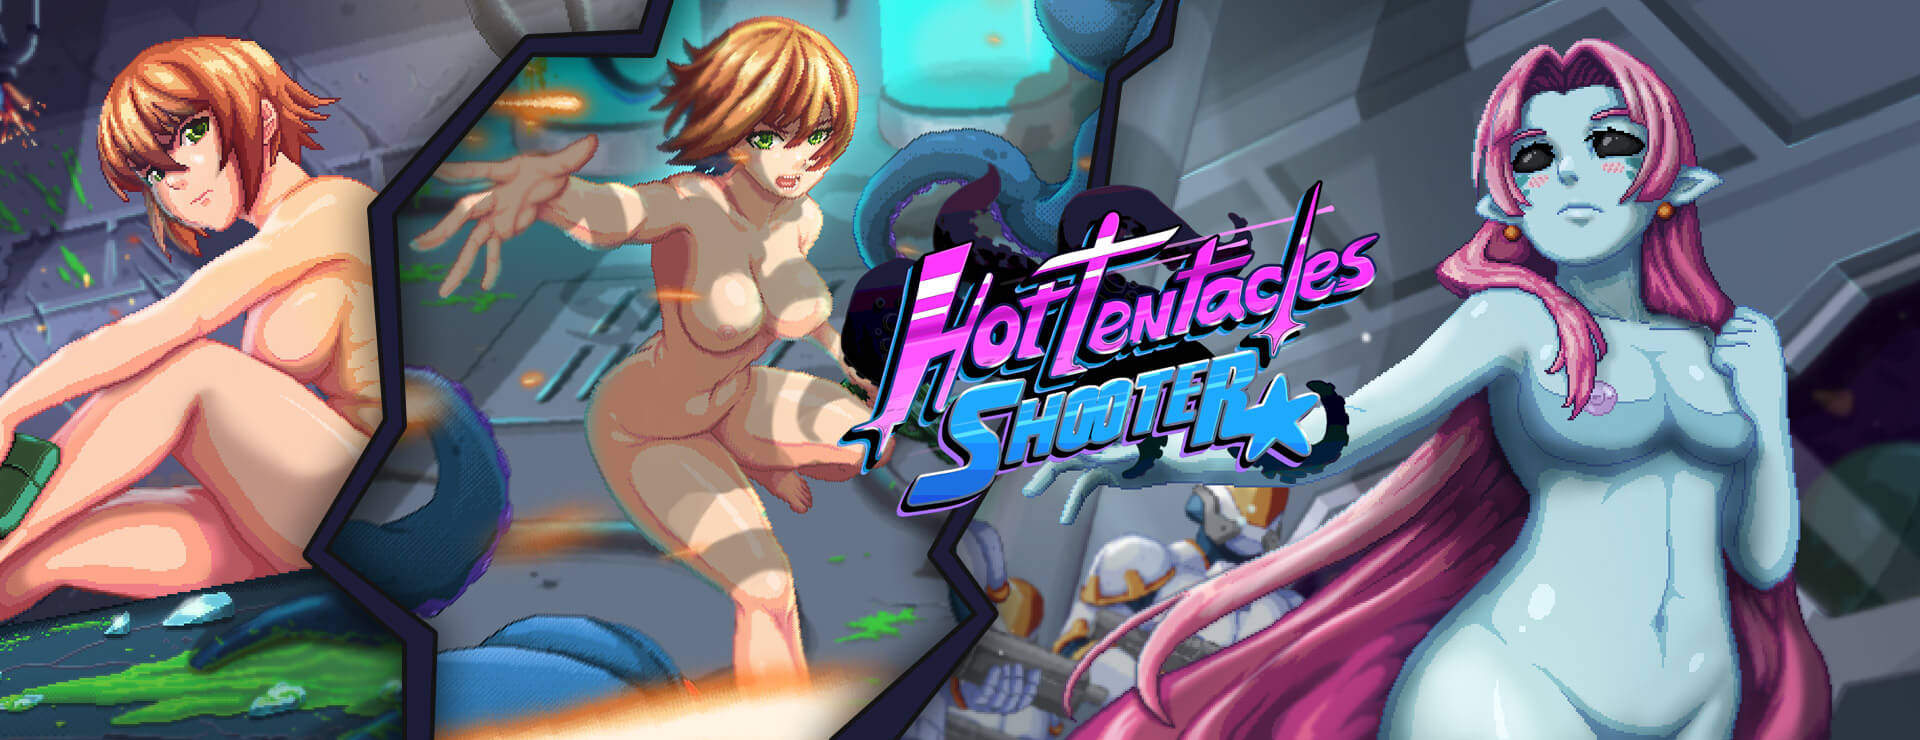 Hot Tentacles Shooter - Przygodowa akcji Gra